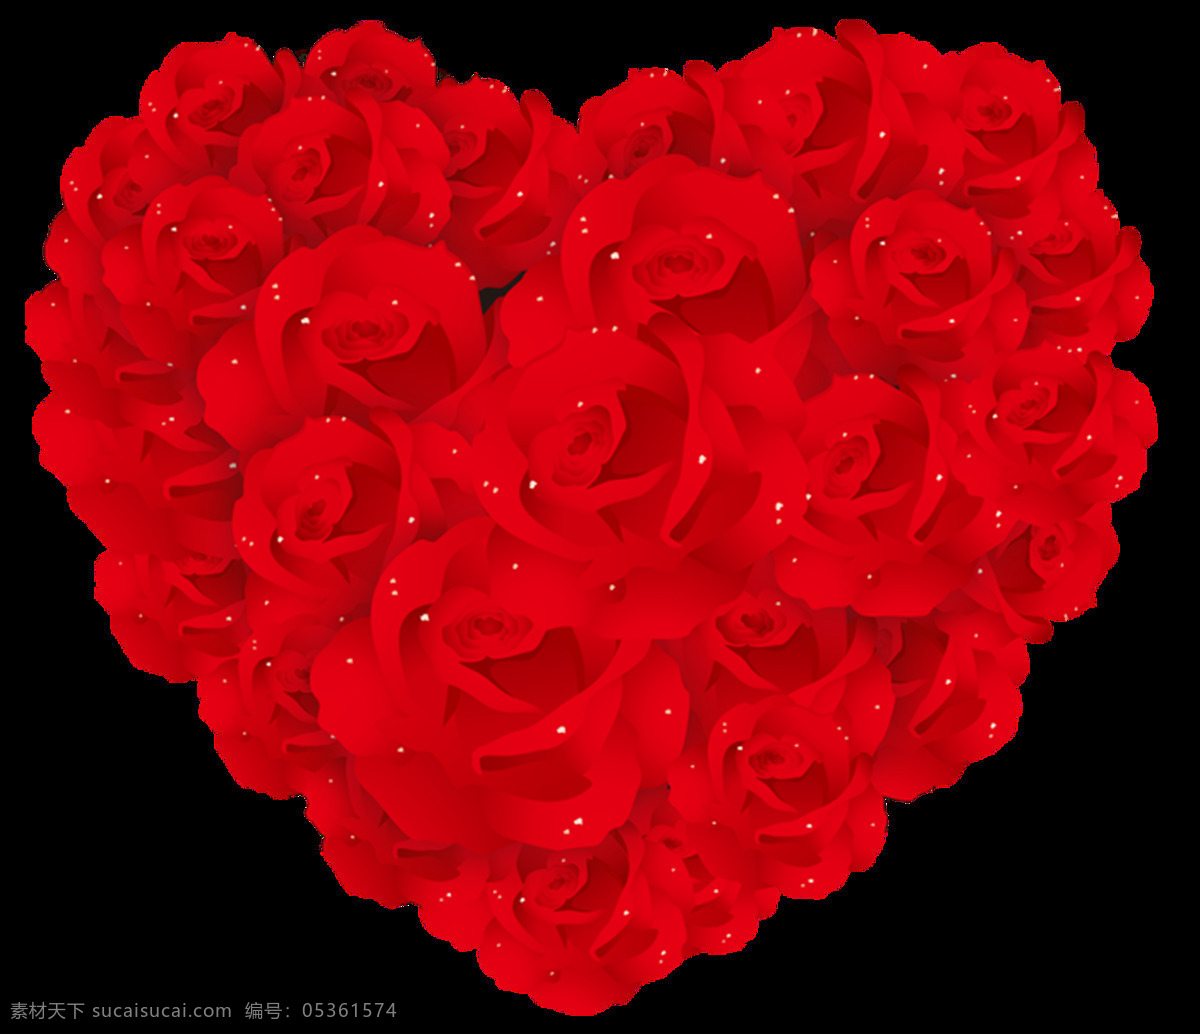 爱心 爱心素材 爱心元素 红色 红色气球 红心 节日 气球 情人节 情人节素材 双心 心心相印 心形 花朵 元素 祝福